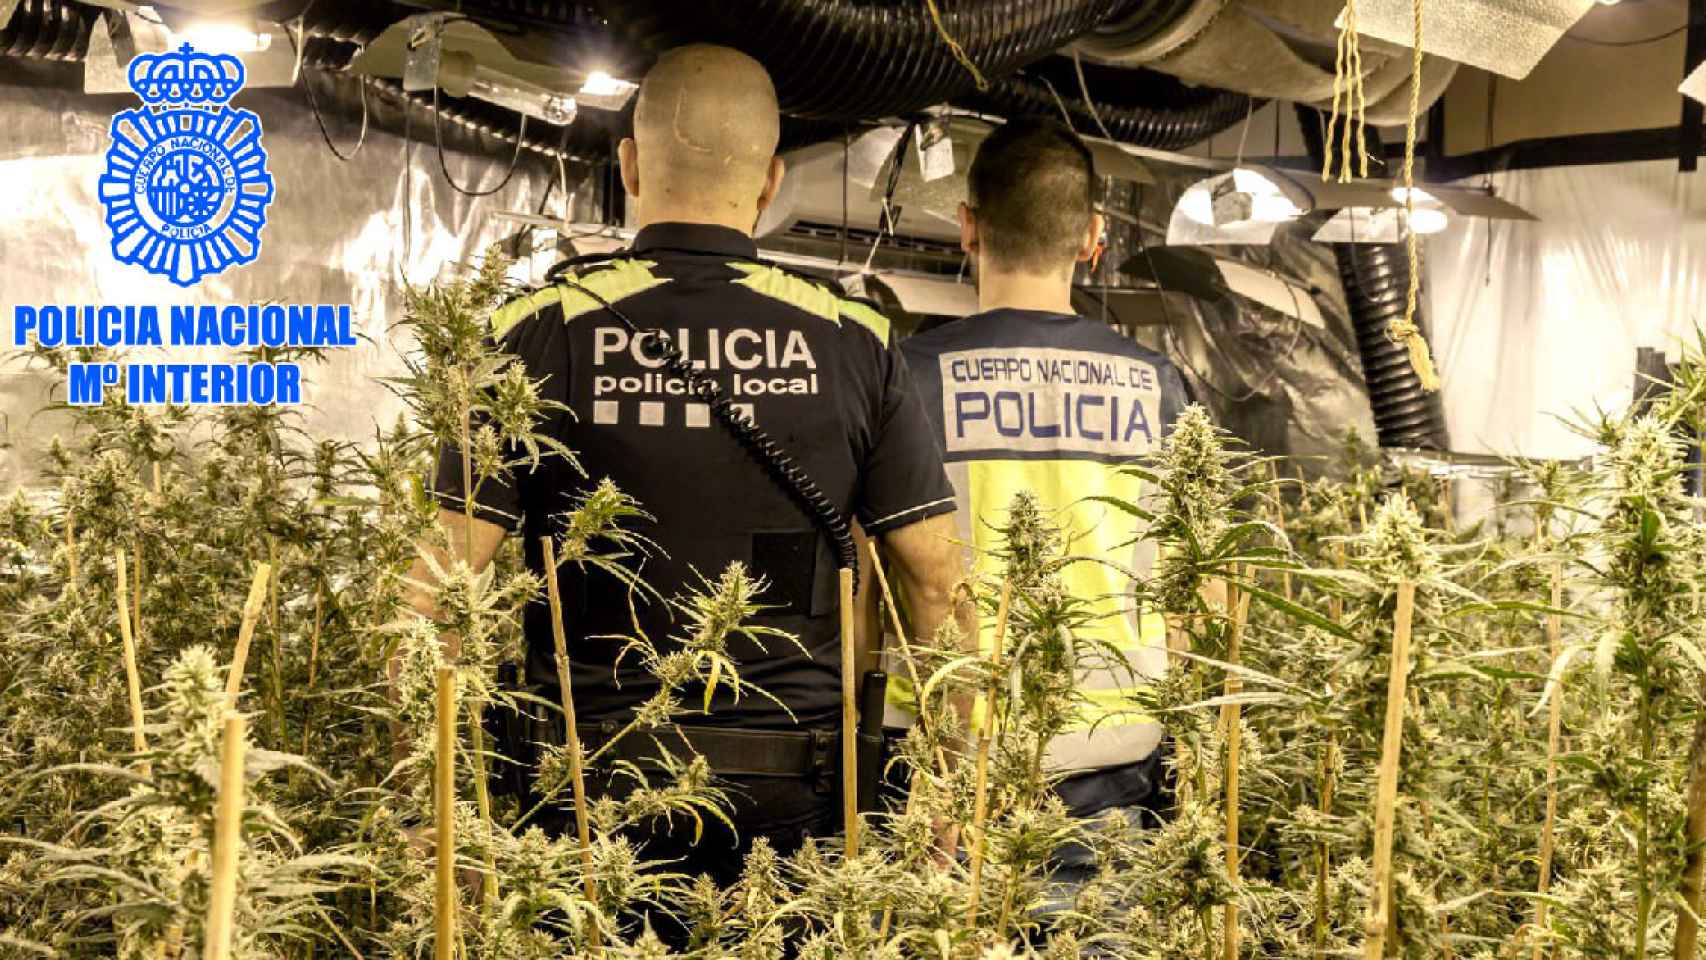 Plantación de marihuana desmantelada por la Policía Nacional en la provincia de Tarragona / CNP